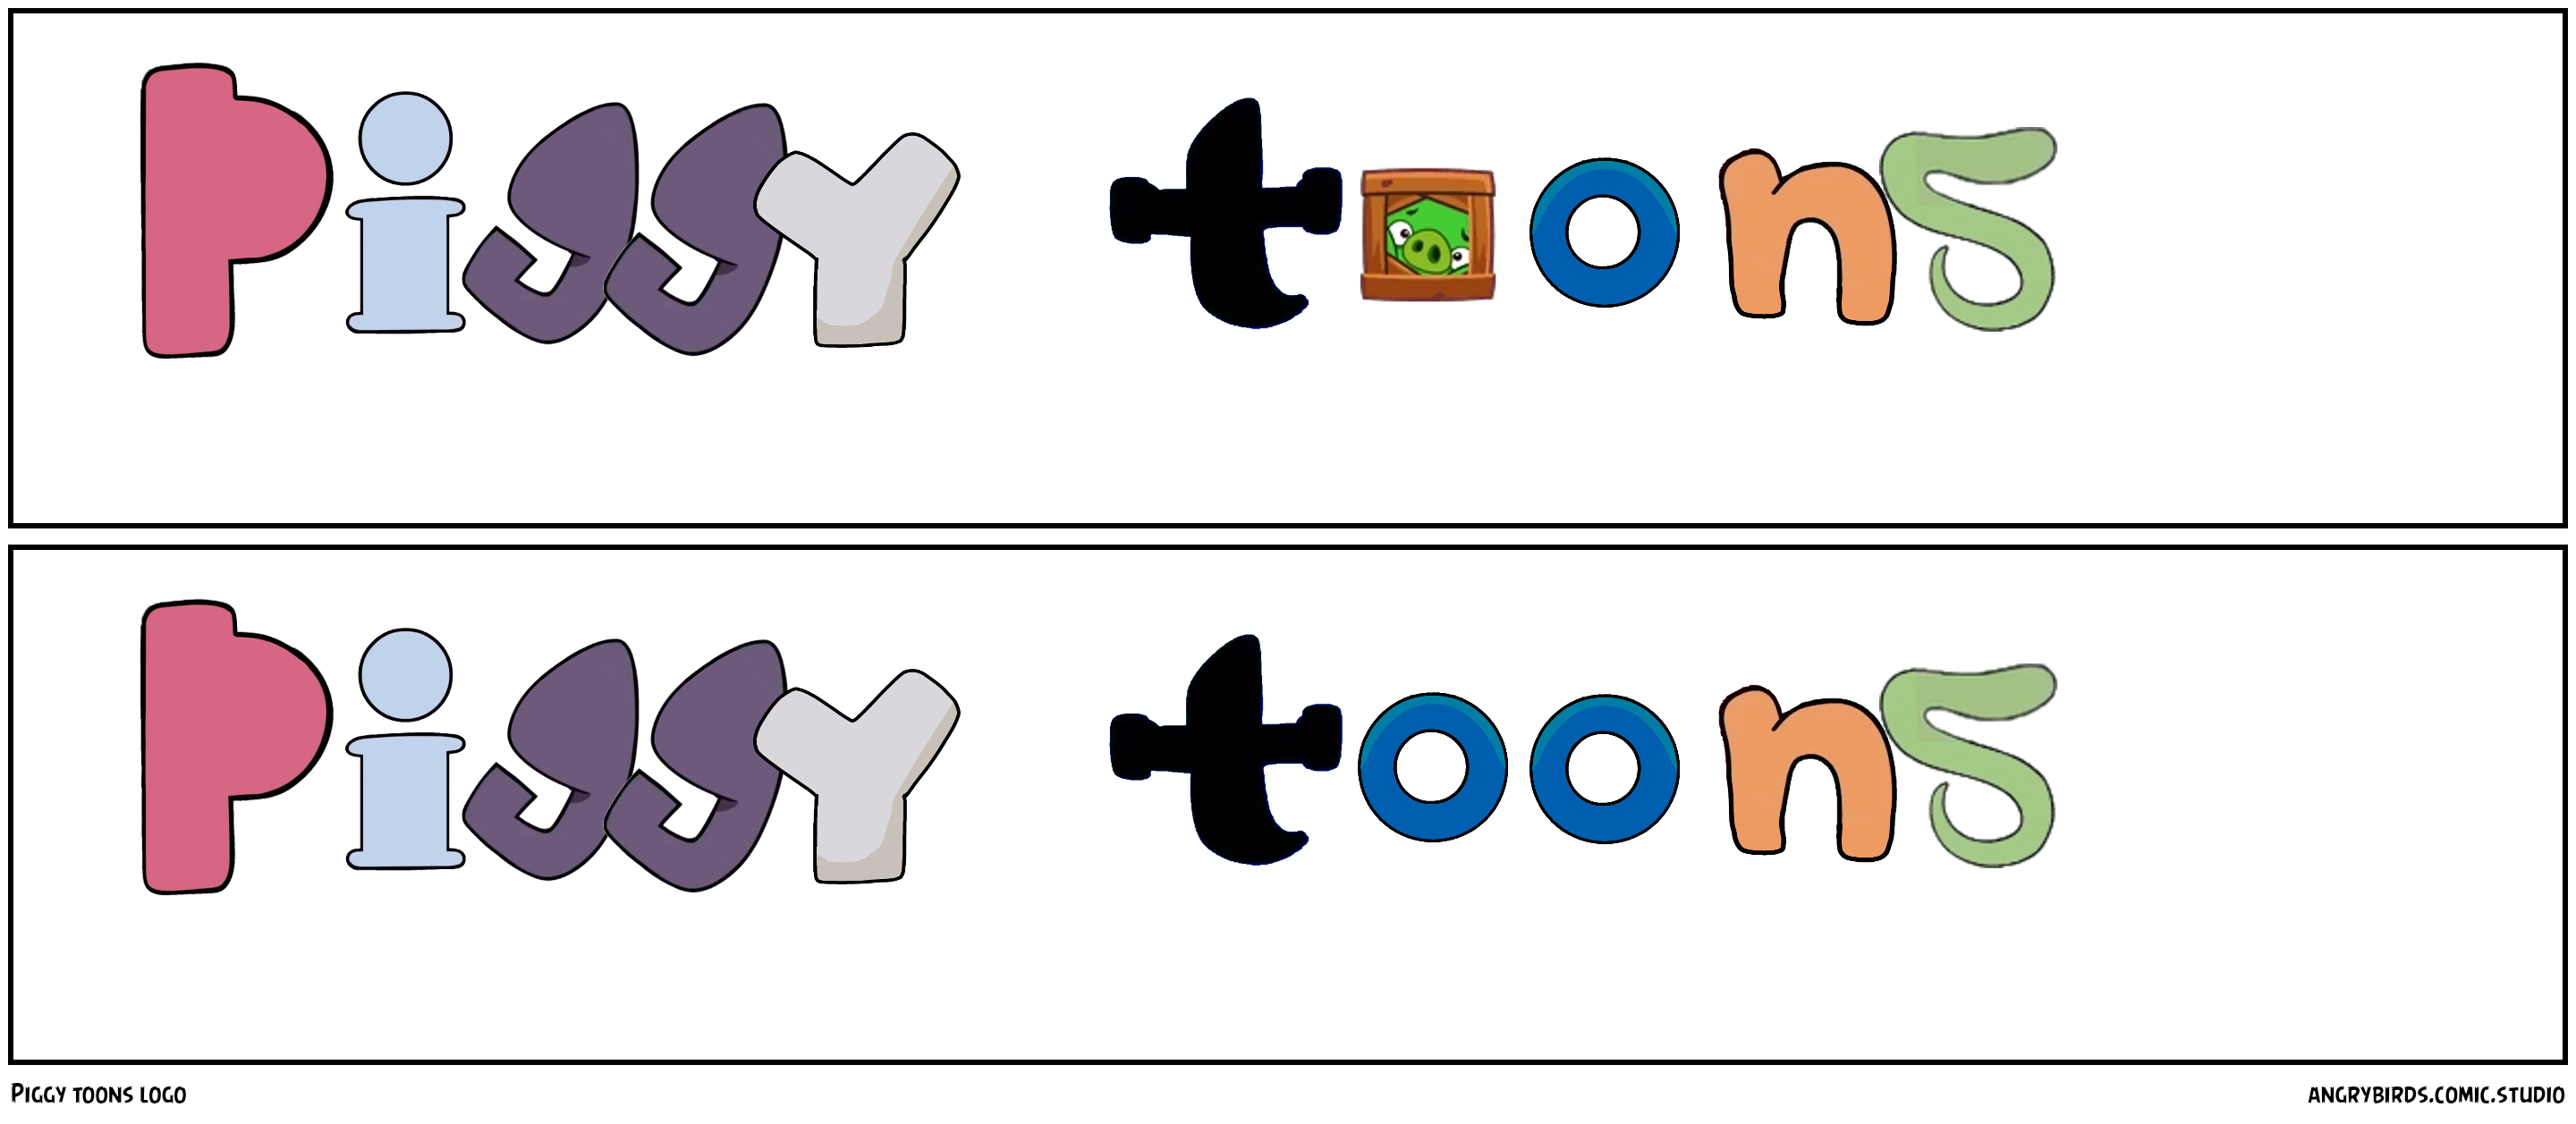 Piggy toons logo